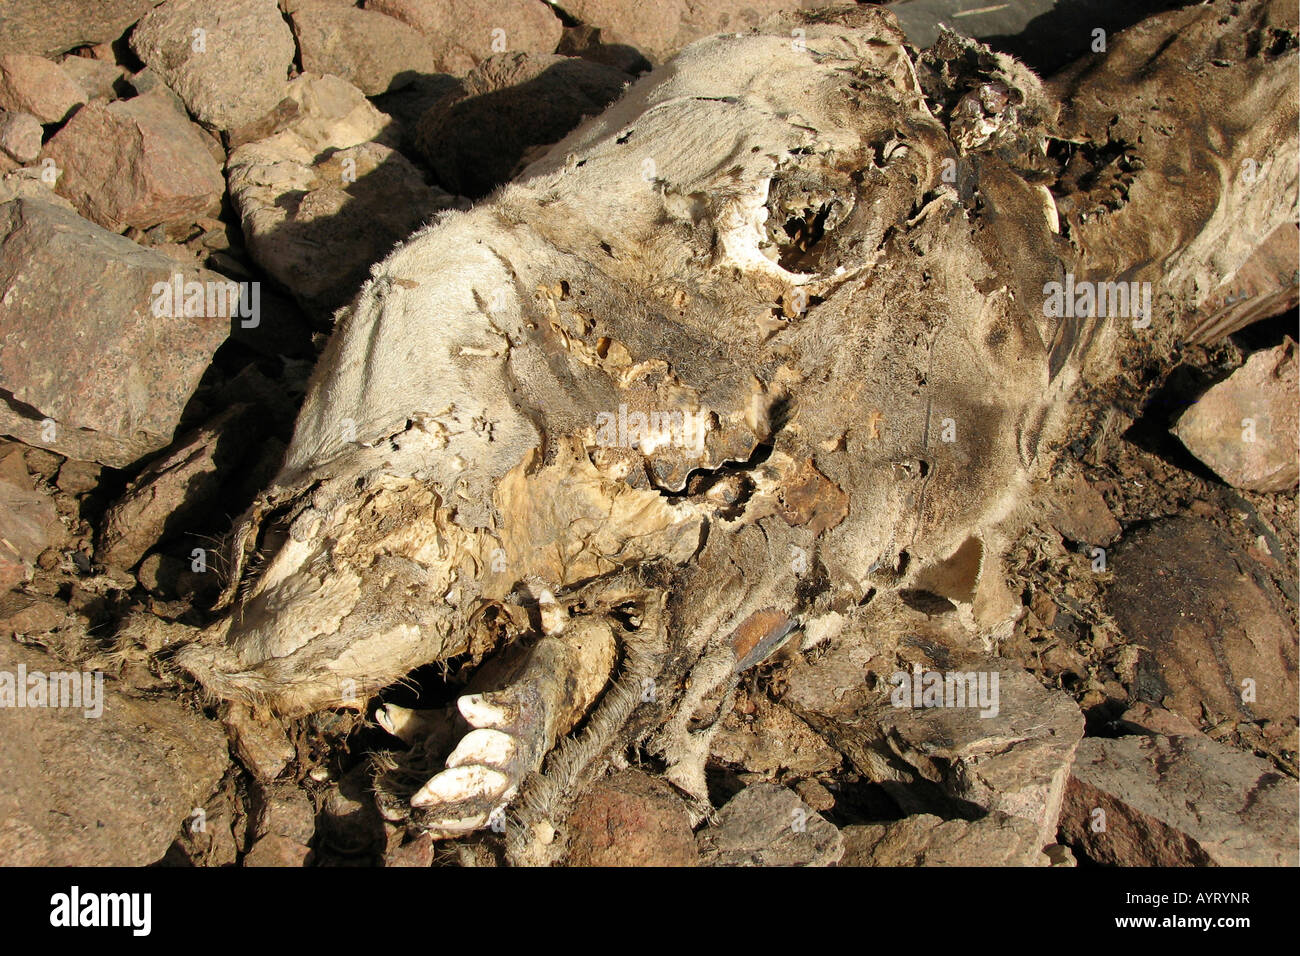 Egypt, Sinai, Dahab, dead camel in the desert Stock Photo